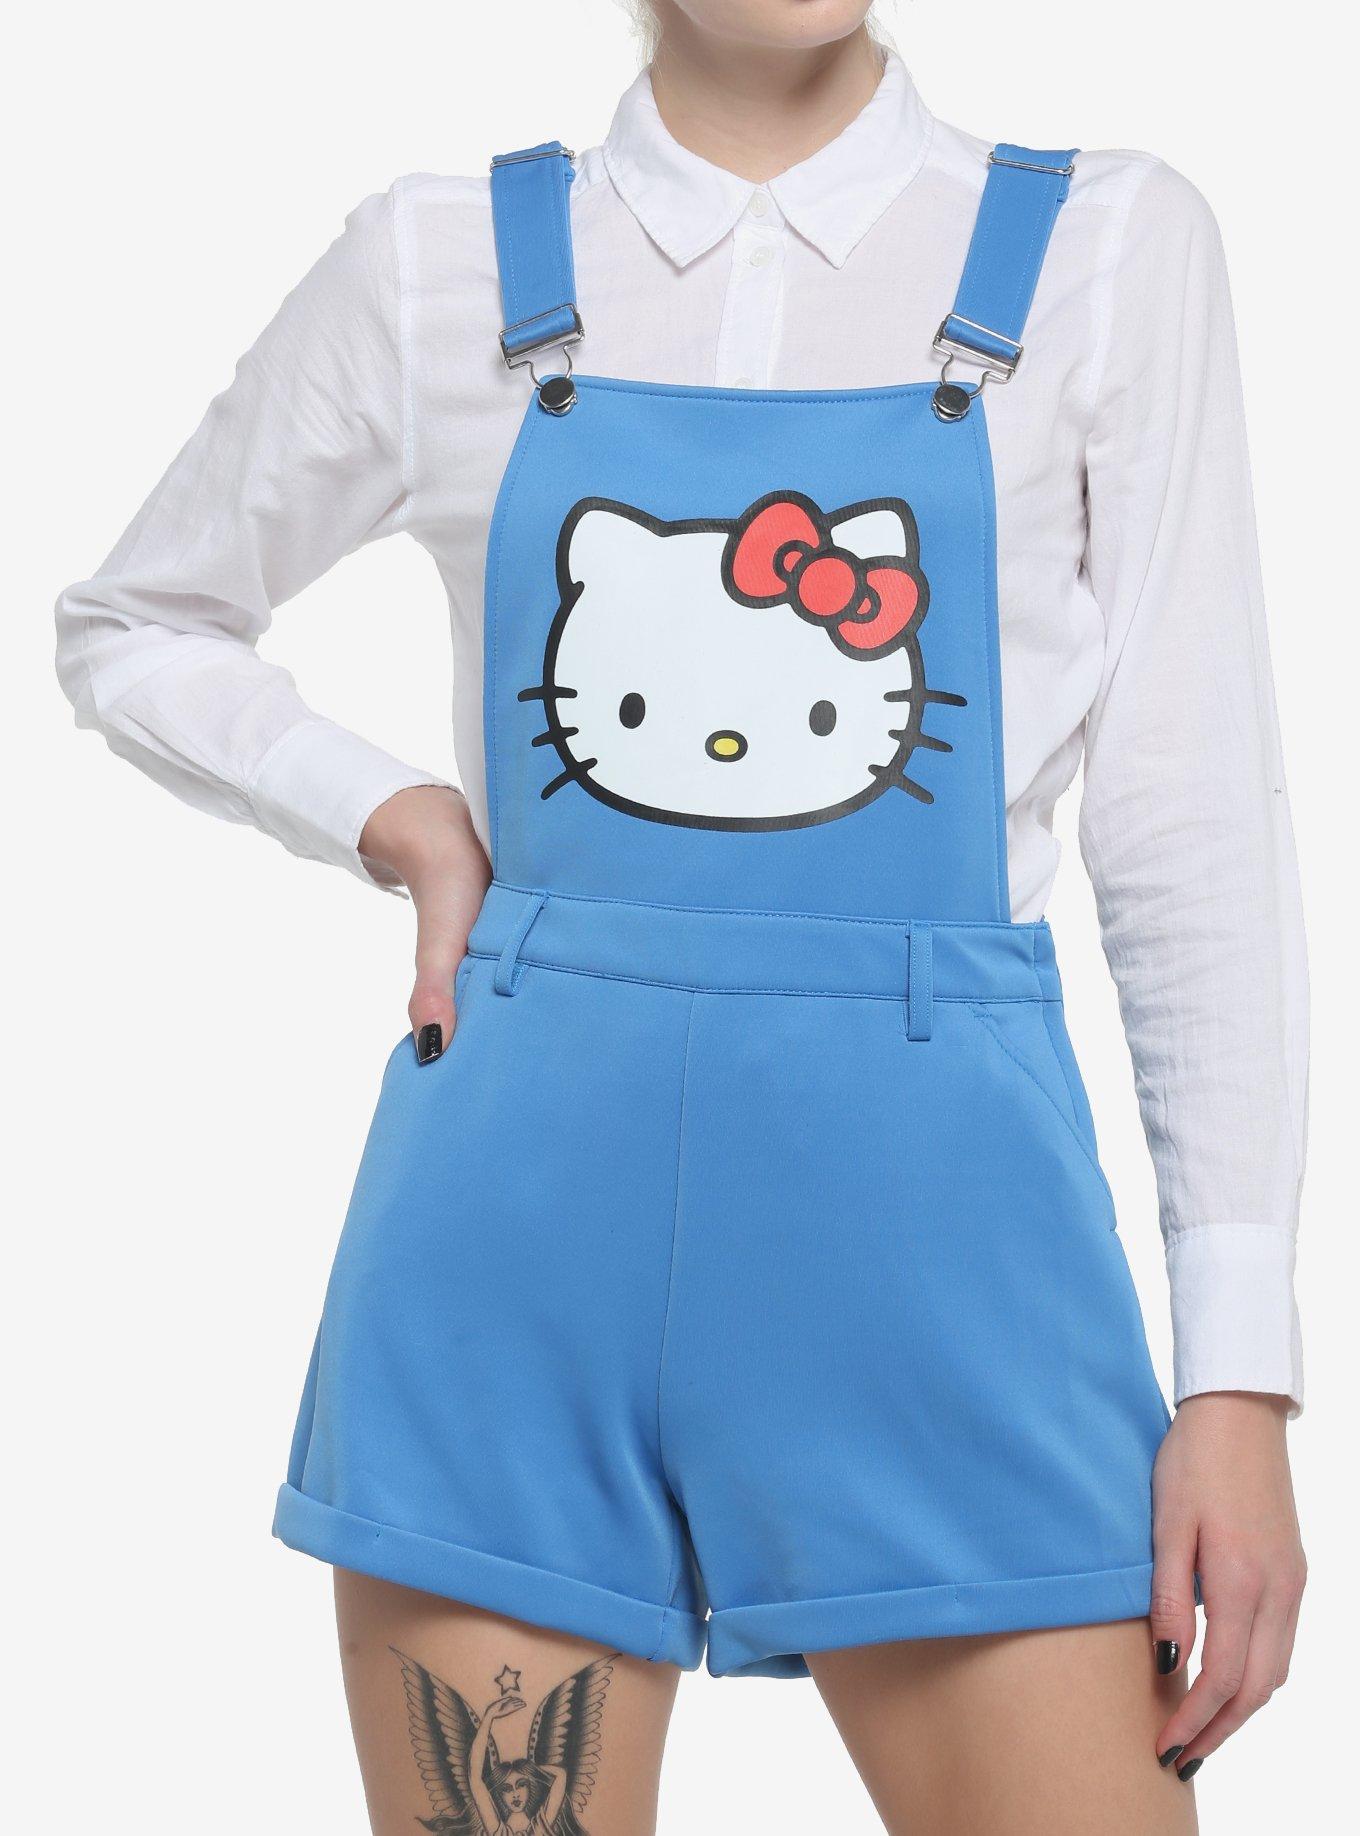 Sanrio's Hello Kitty in Blue Overalls